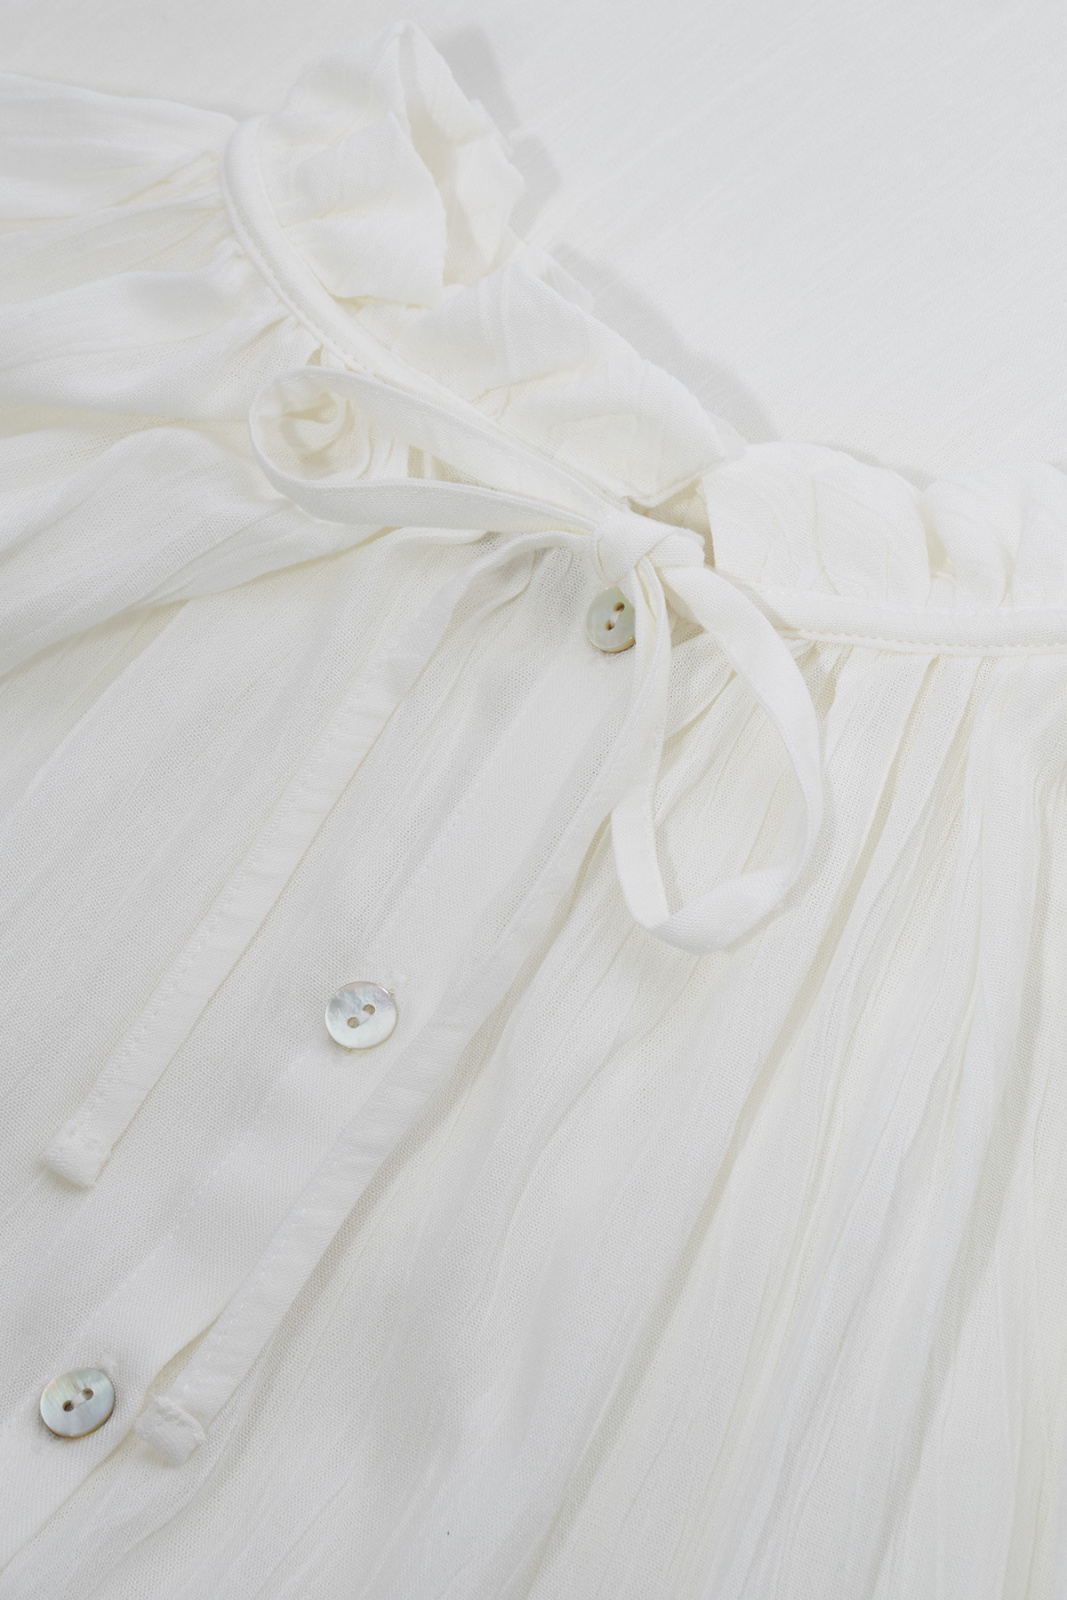 Lena Koszula Biały Koszule, bluzki, topy Elementy